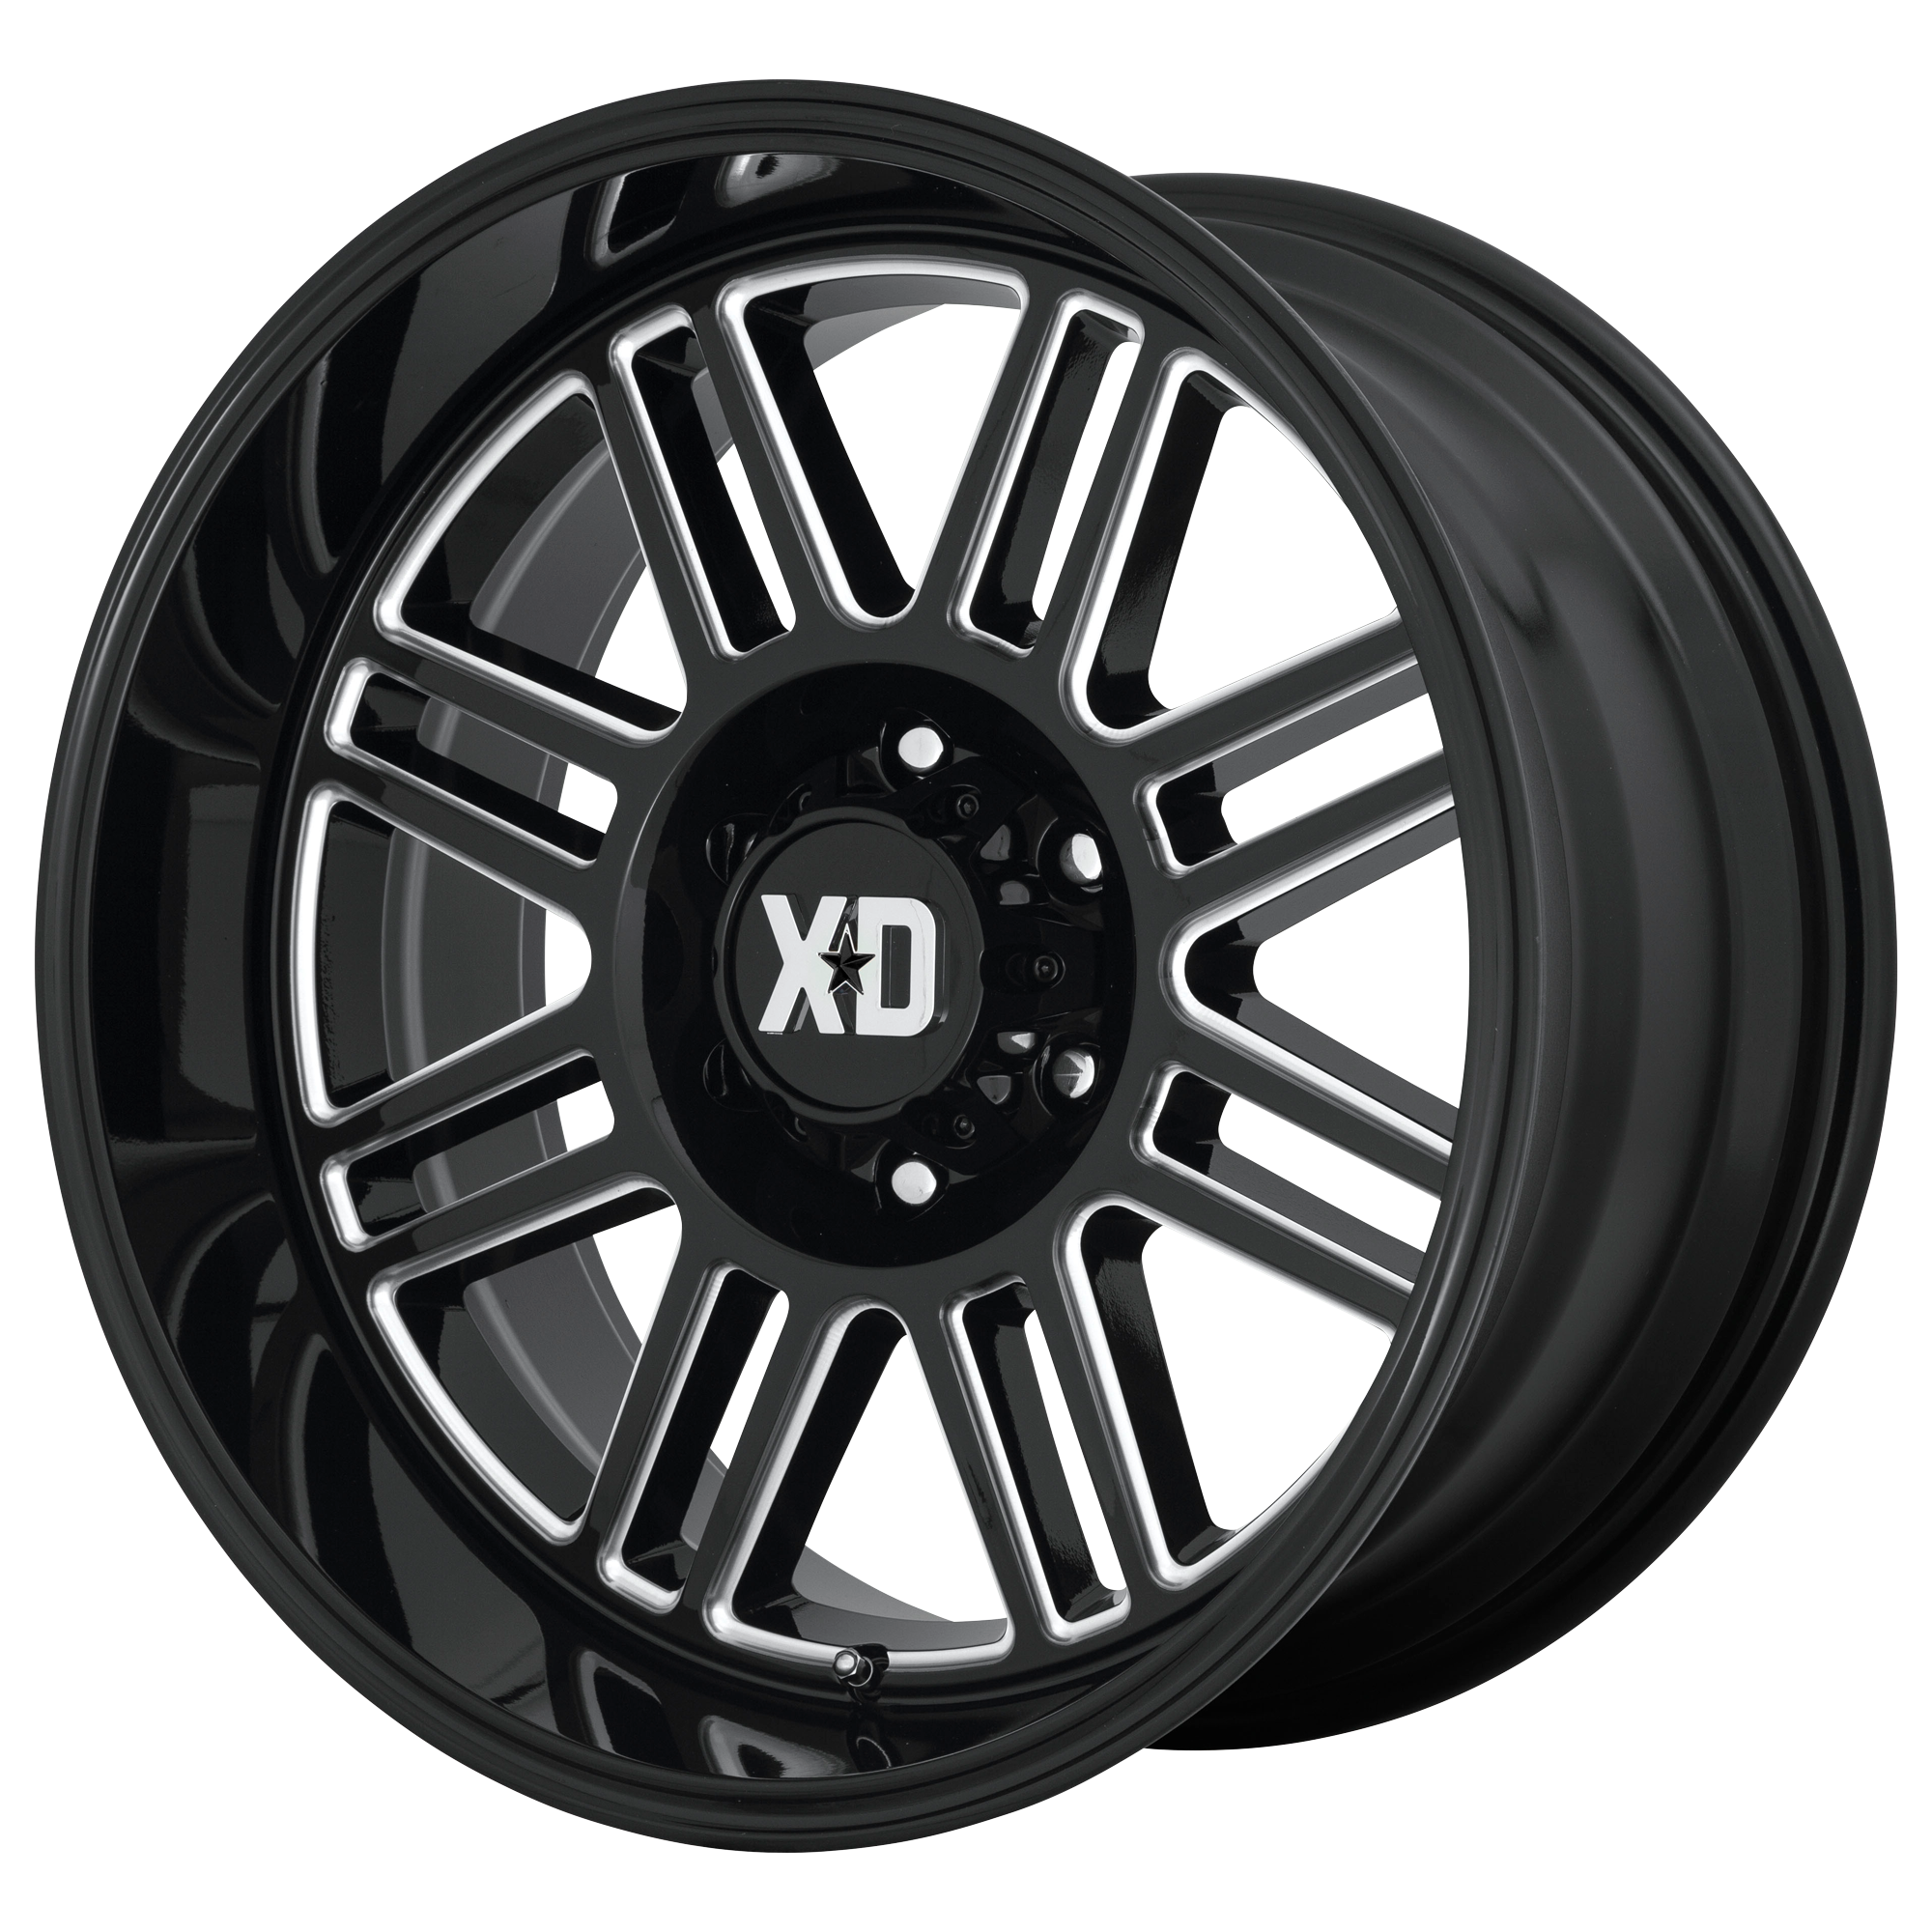 XD 22"x10" Non-Chrome Gloss Black Milled Custom Wheel ARSWCWXD85022087318N